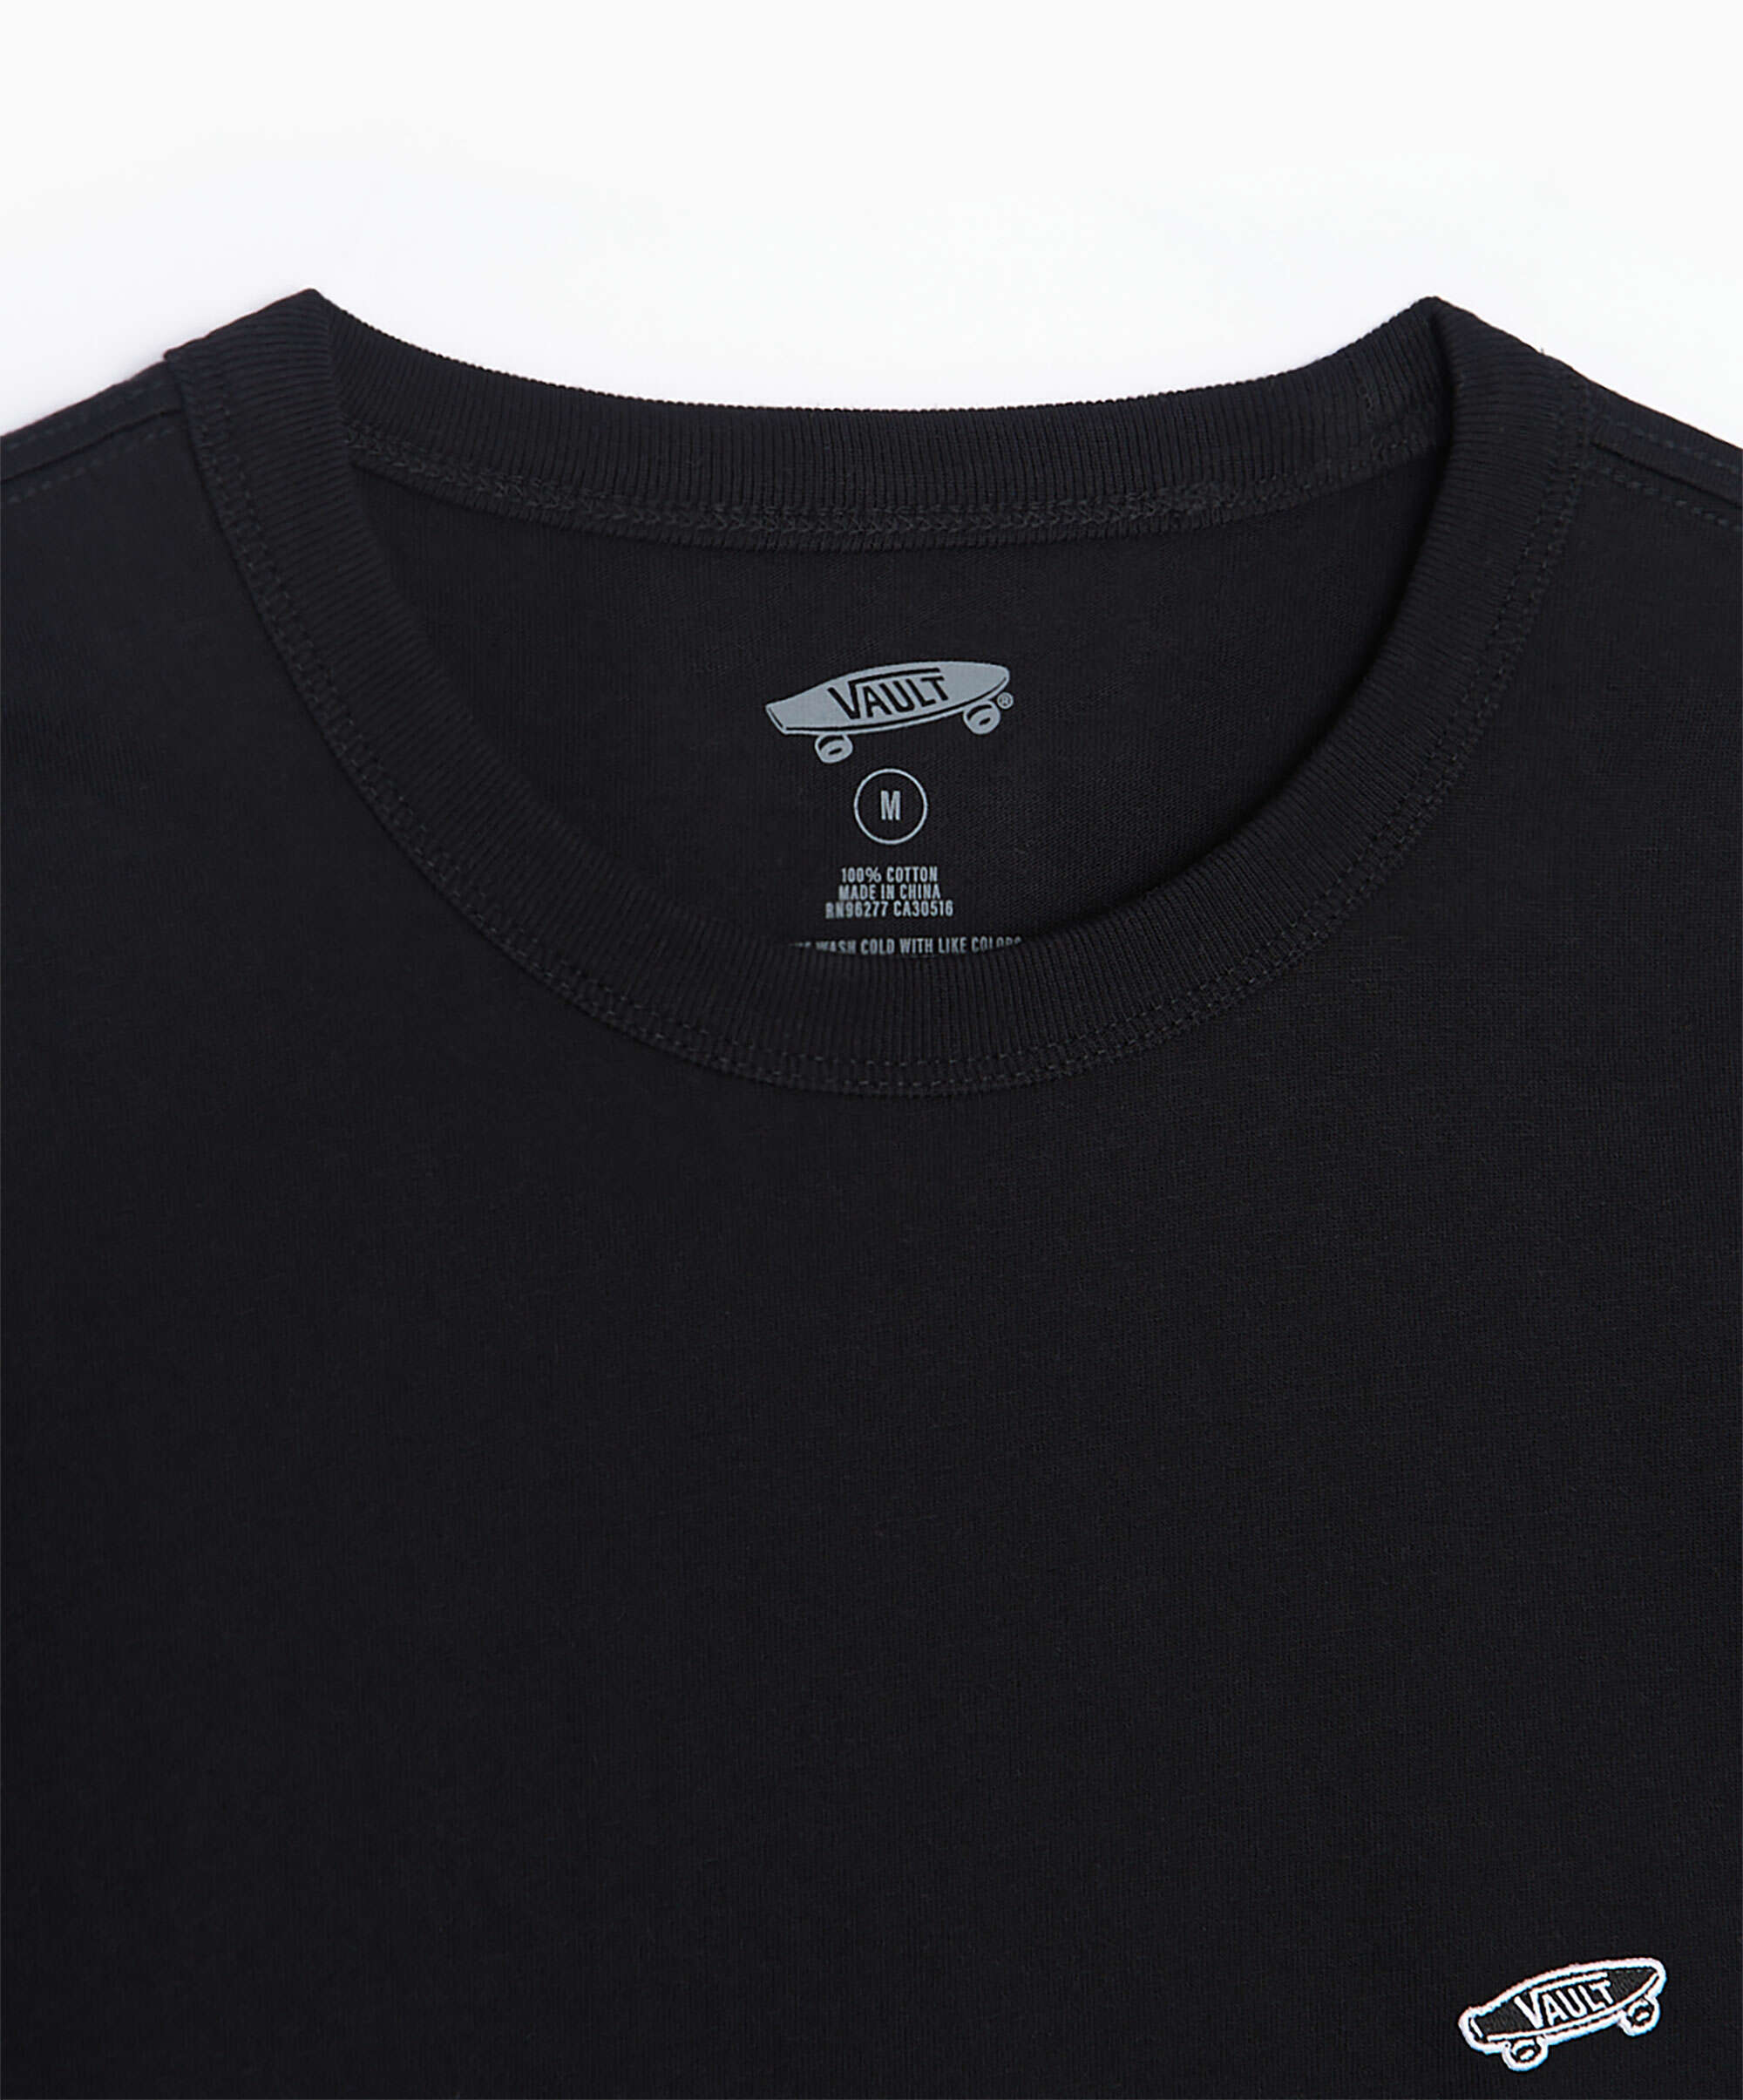 Vans Vault OG Men's Long-Sleeve T-Shirt Black VN0A5E1LBLK| Buy Online ...